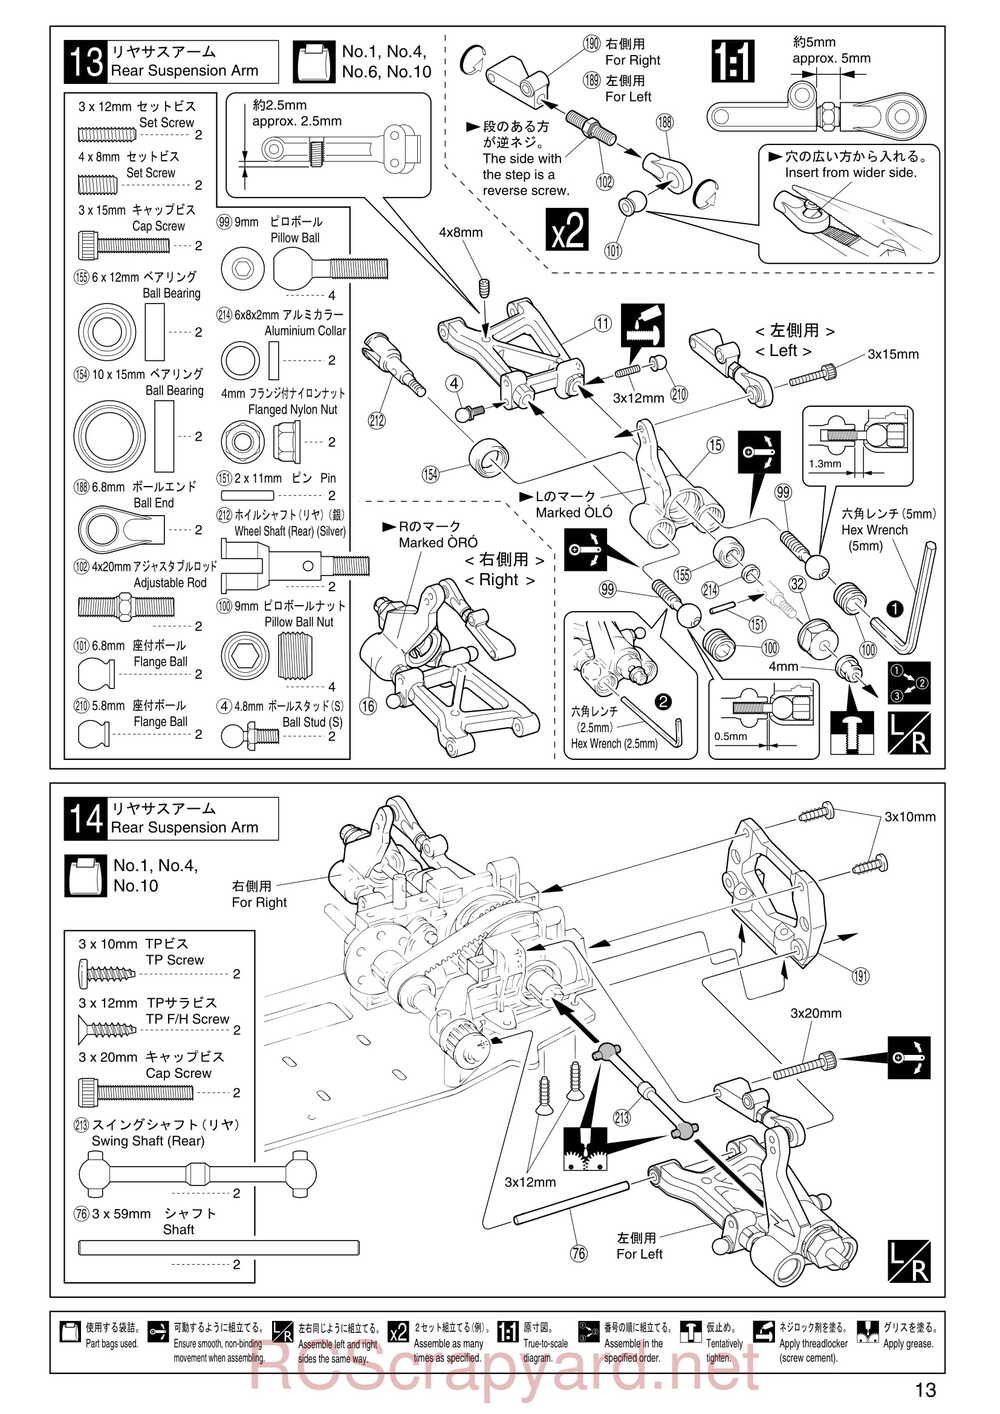 Kyosho - 31255 - V-One RR Evolution - Manual - Page 13